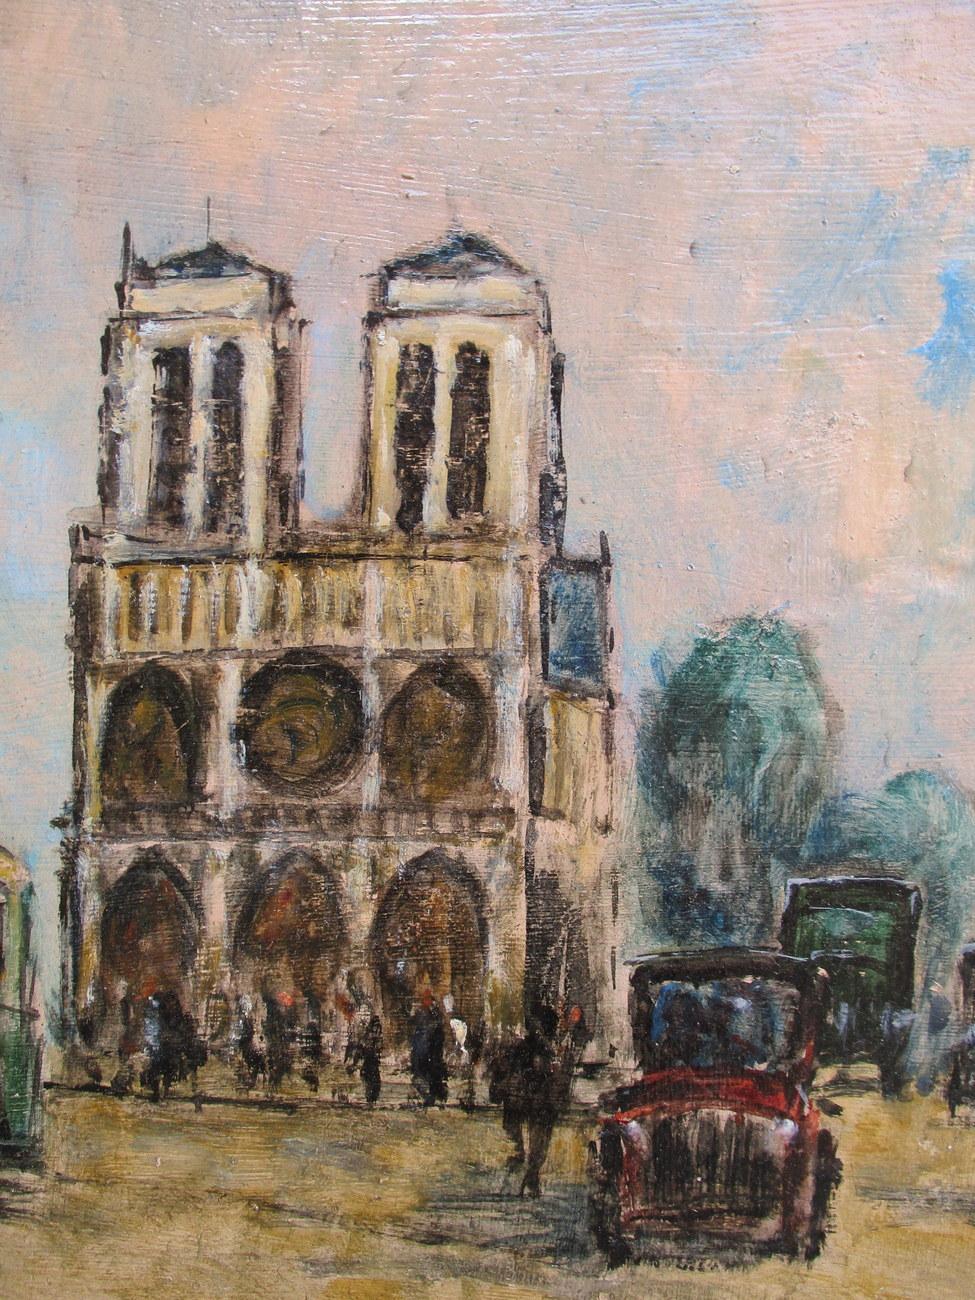 Die Kathedrale Notre Dame von Maurice Falliès (Franzose, 1883-1965), einem Künstler, der sich auf Pariser Straßenszenen spezialisiert hat. Seine Werke wurden kürzlich im Musée de l'Ile de France/Chateau de Sceaux neben denen von Caillebotte und